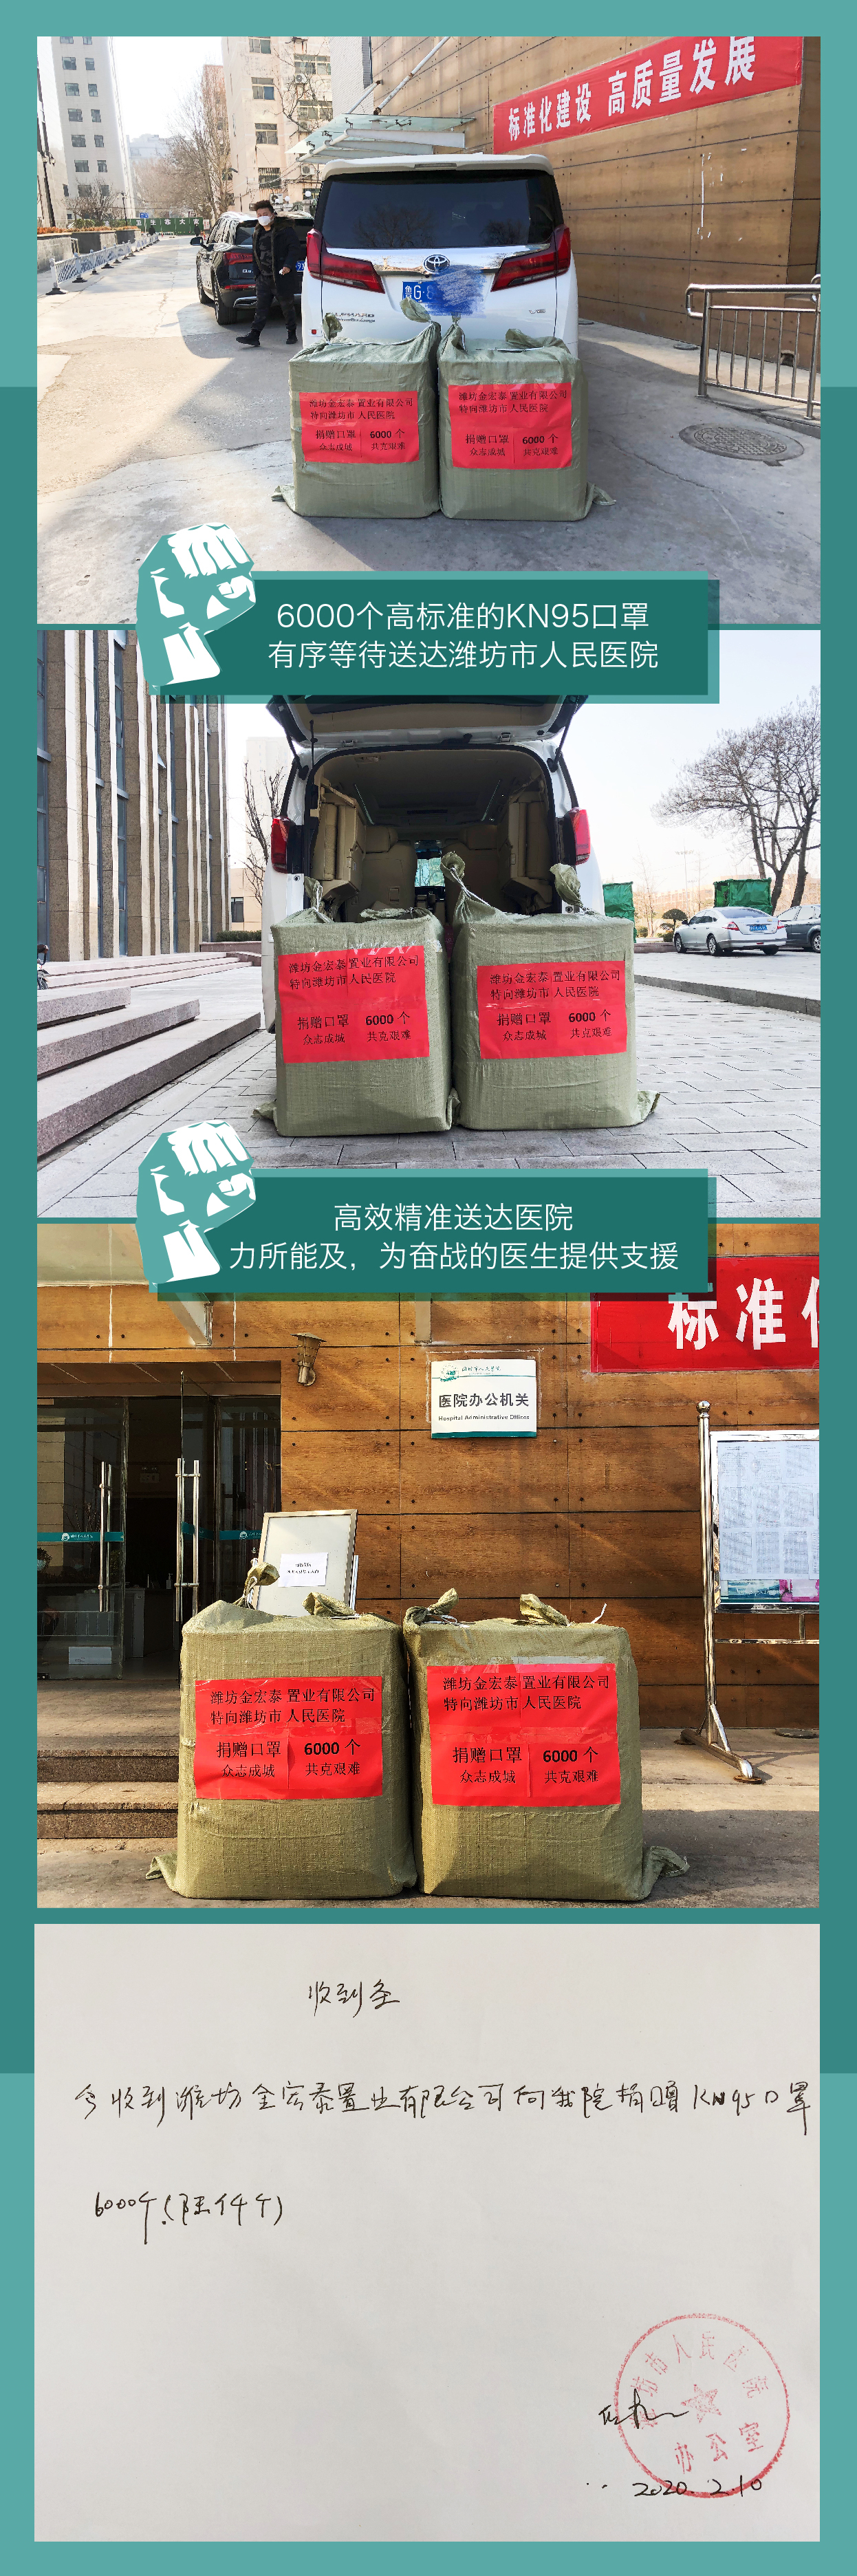 【助力抗疫一线】潍坊金宏泰置业捐款捐物在行动